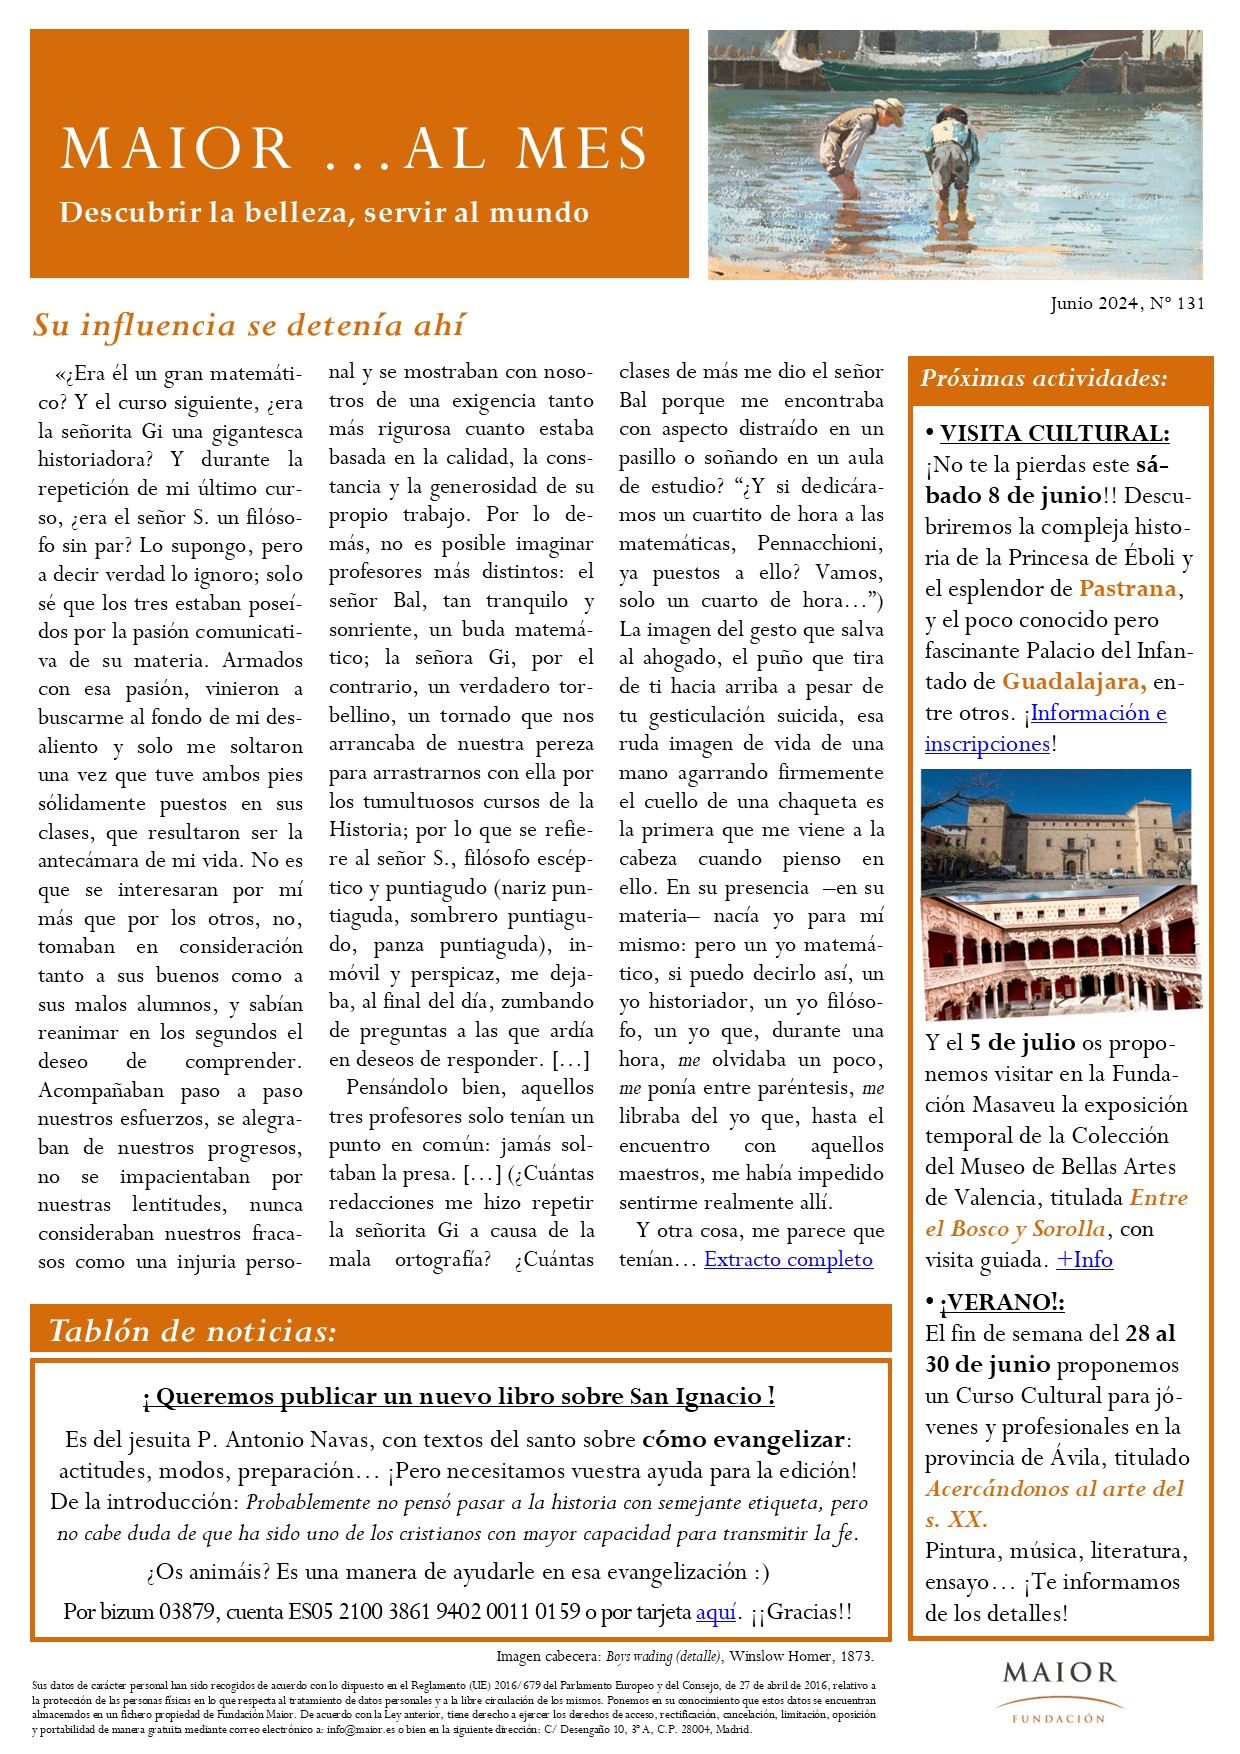 Boletín mensual de noticias y actividades de la Fundación Maior. Edición de junio 2024